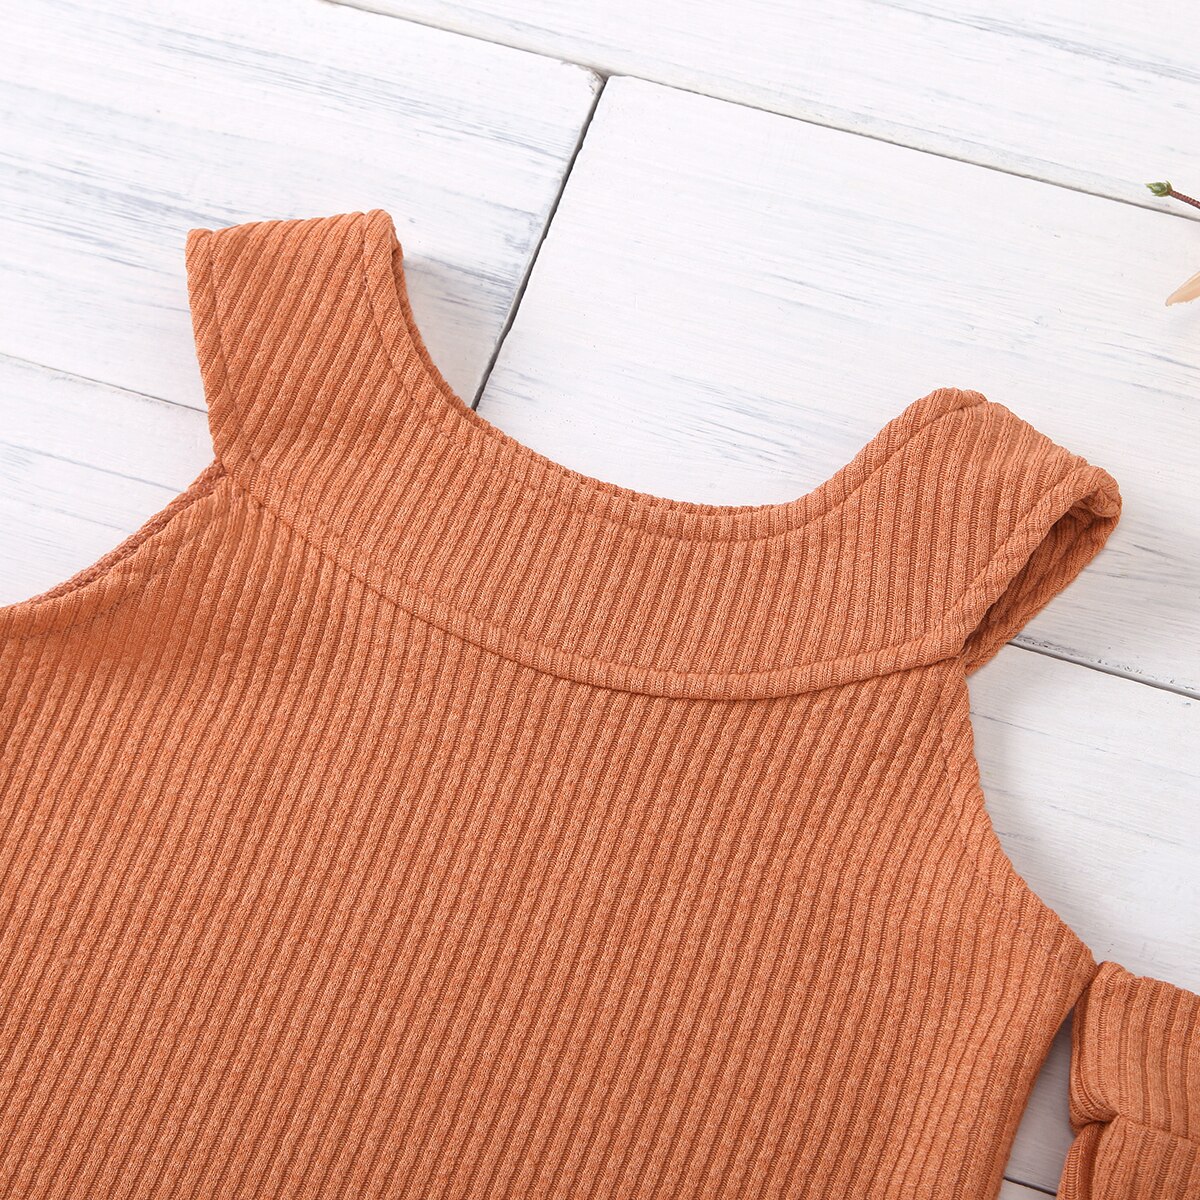 18m-7t toddler baby pige off-shoulder strikvarer hårbold strik sweater top ensfarvet rund krave tøj forår efterår